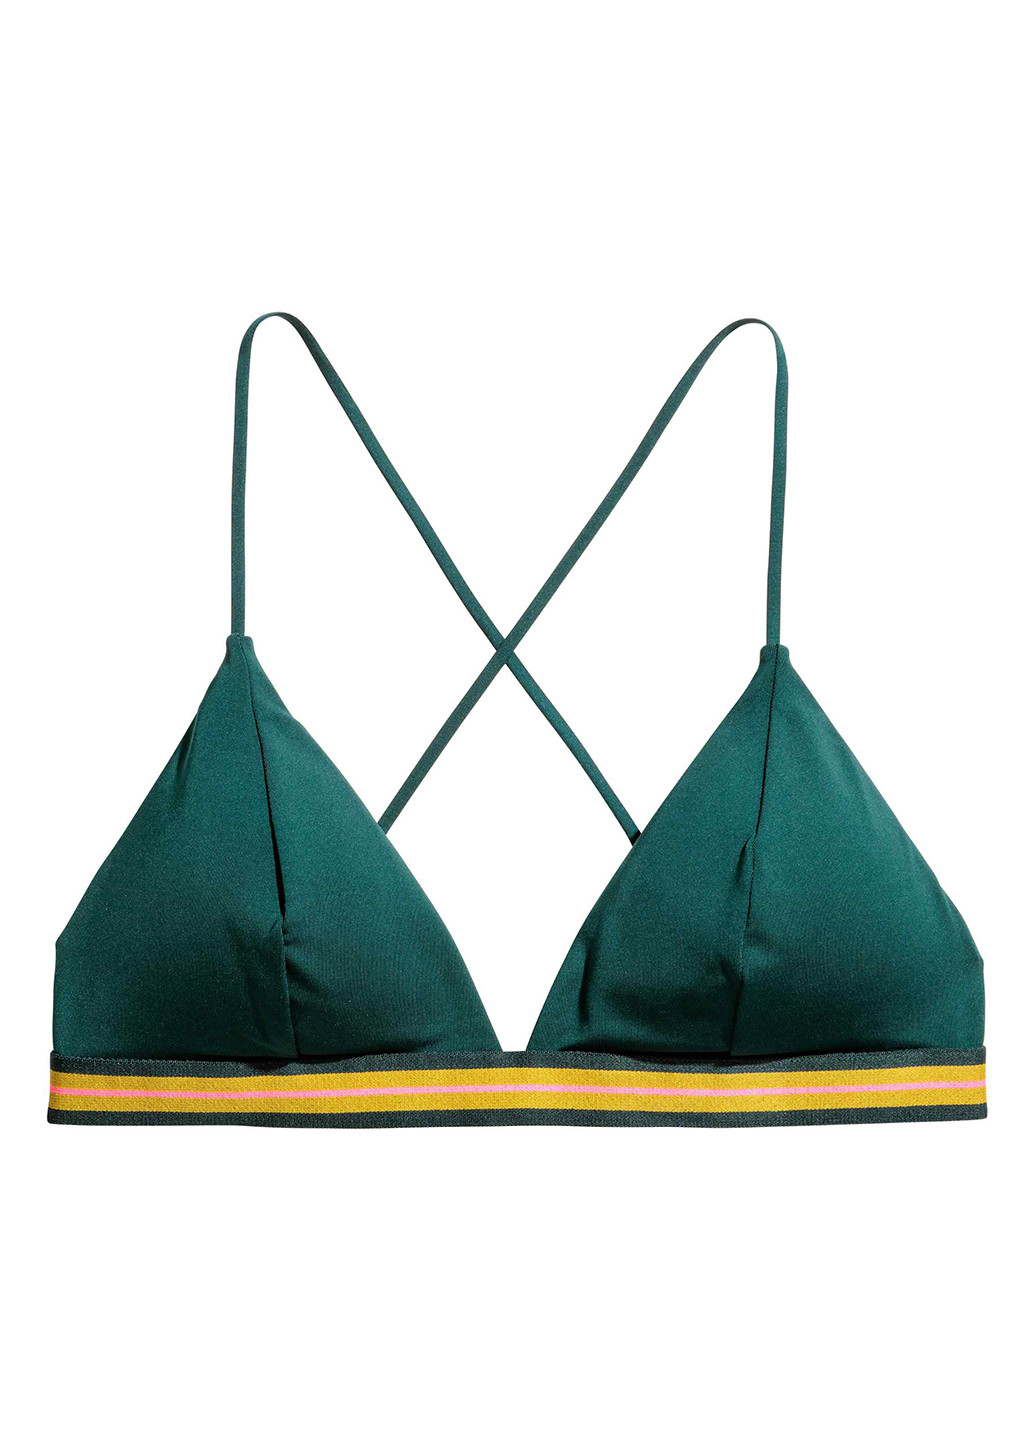 Купальный лиф H&M бикини однотонный зелёный пляжный